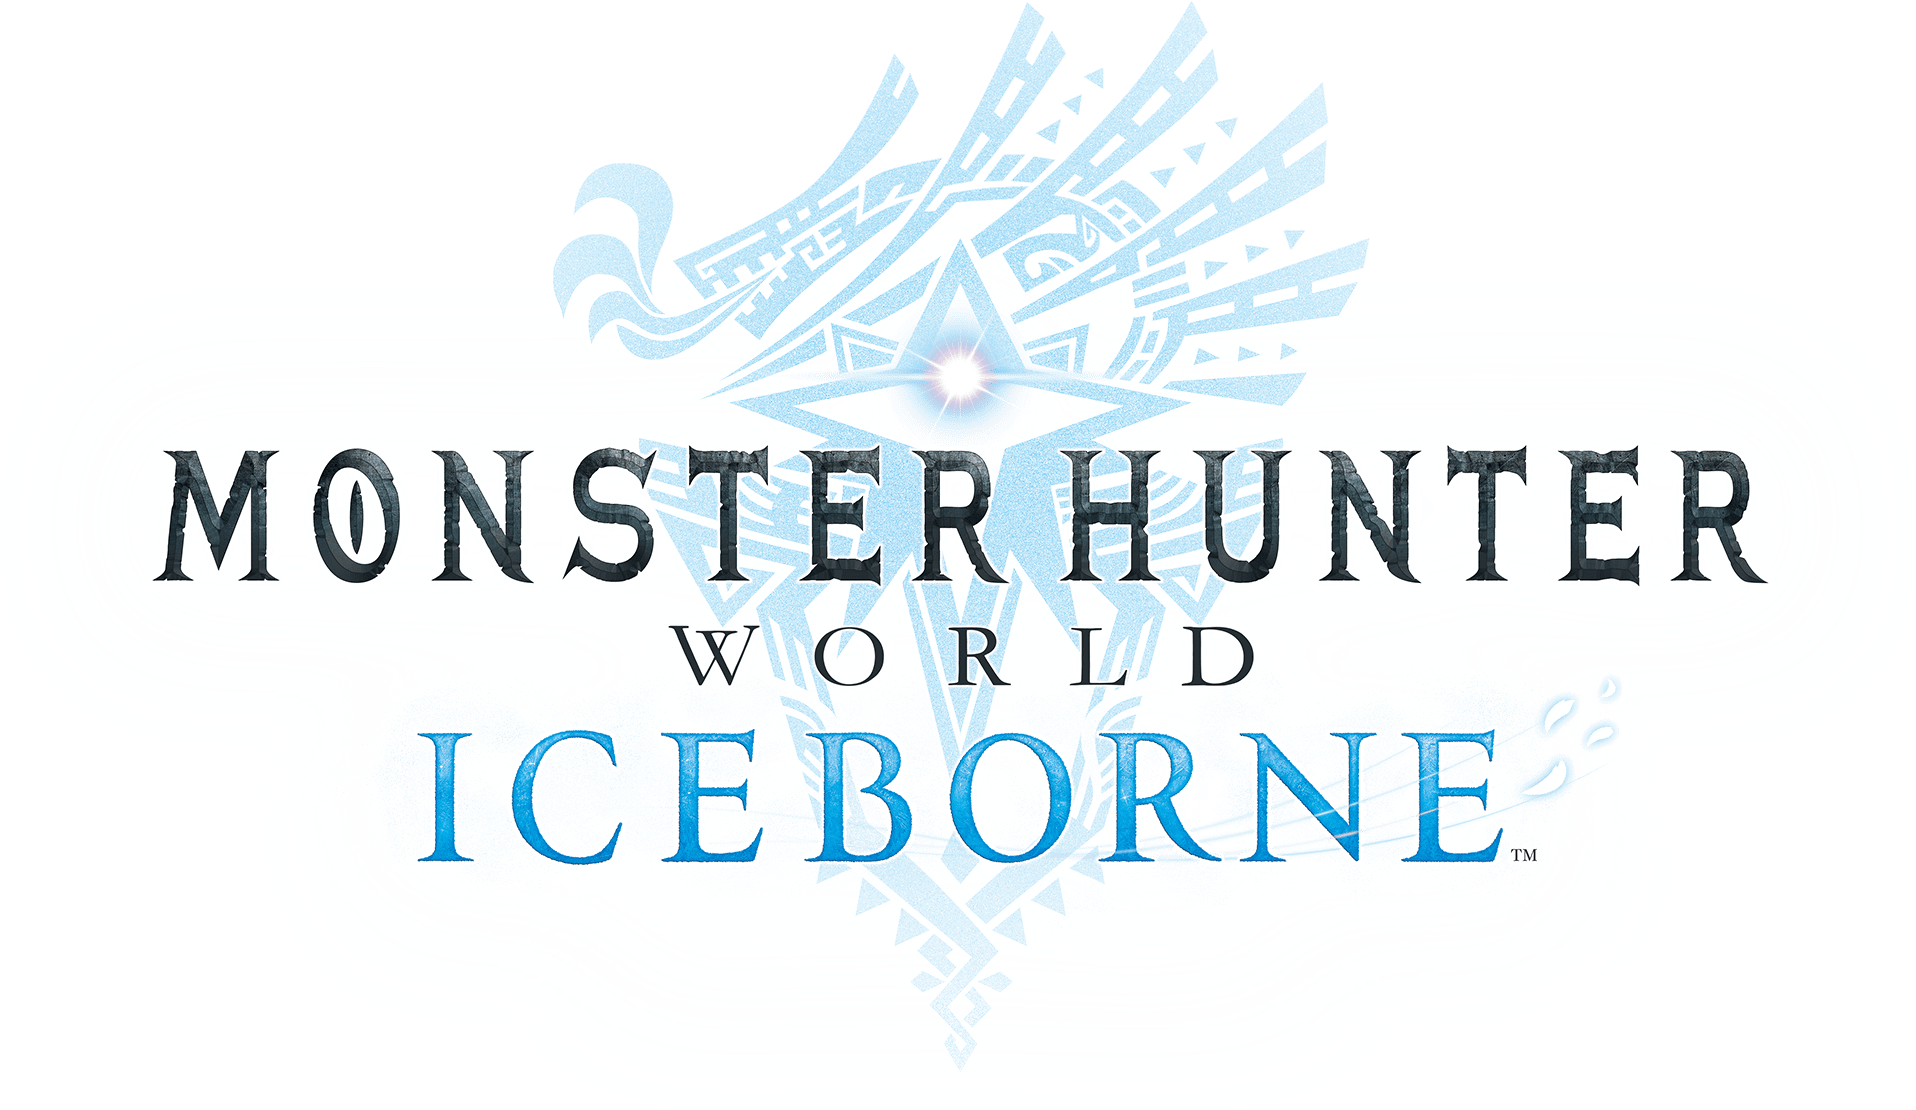 MONSTER HUNTER WORLD: ICEBORNE